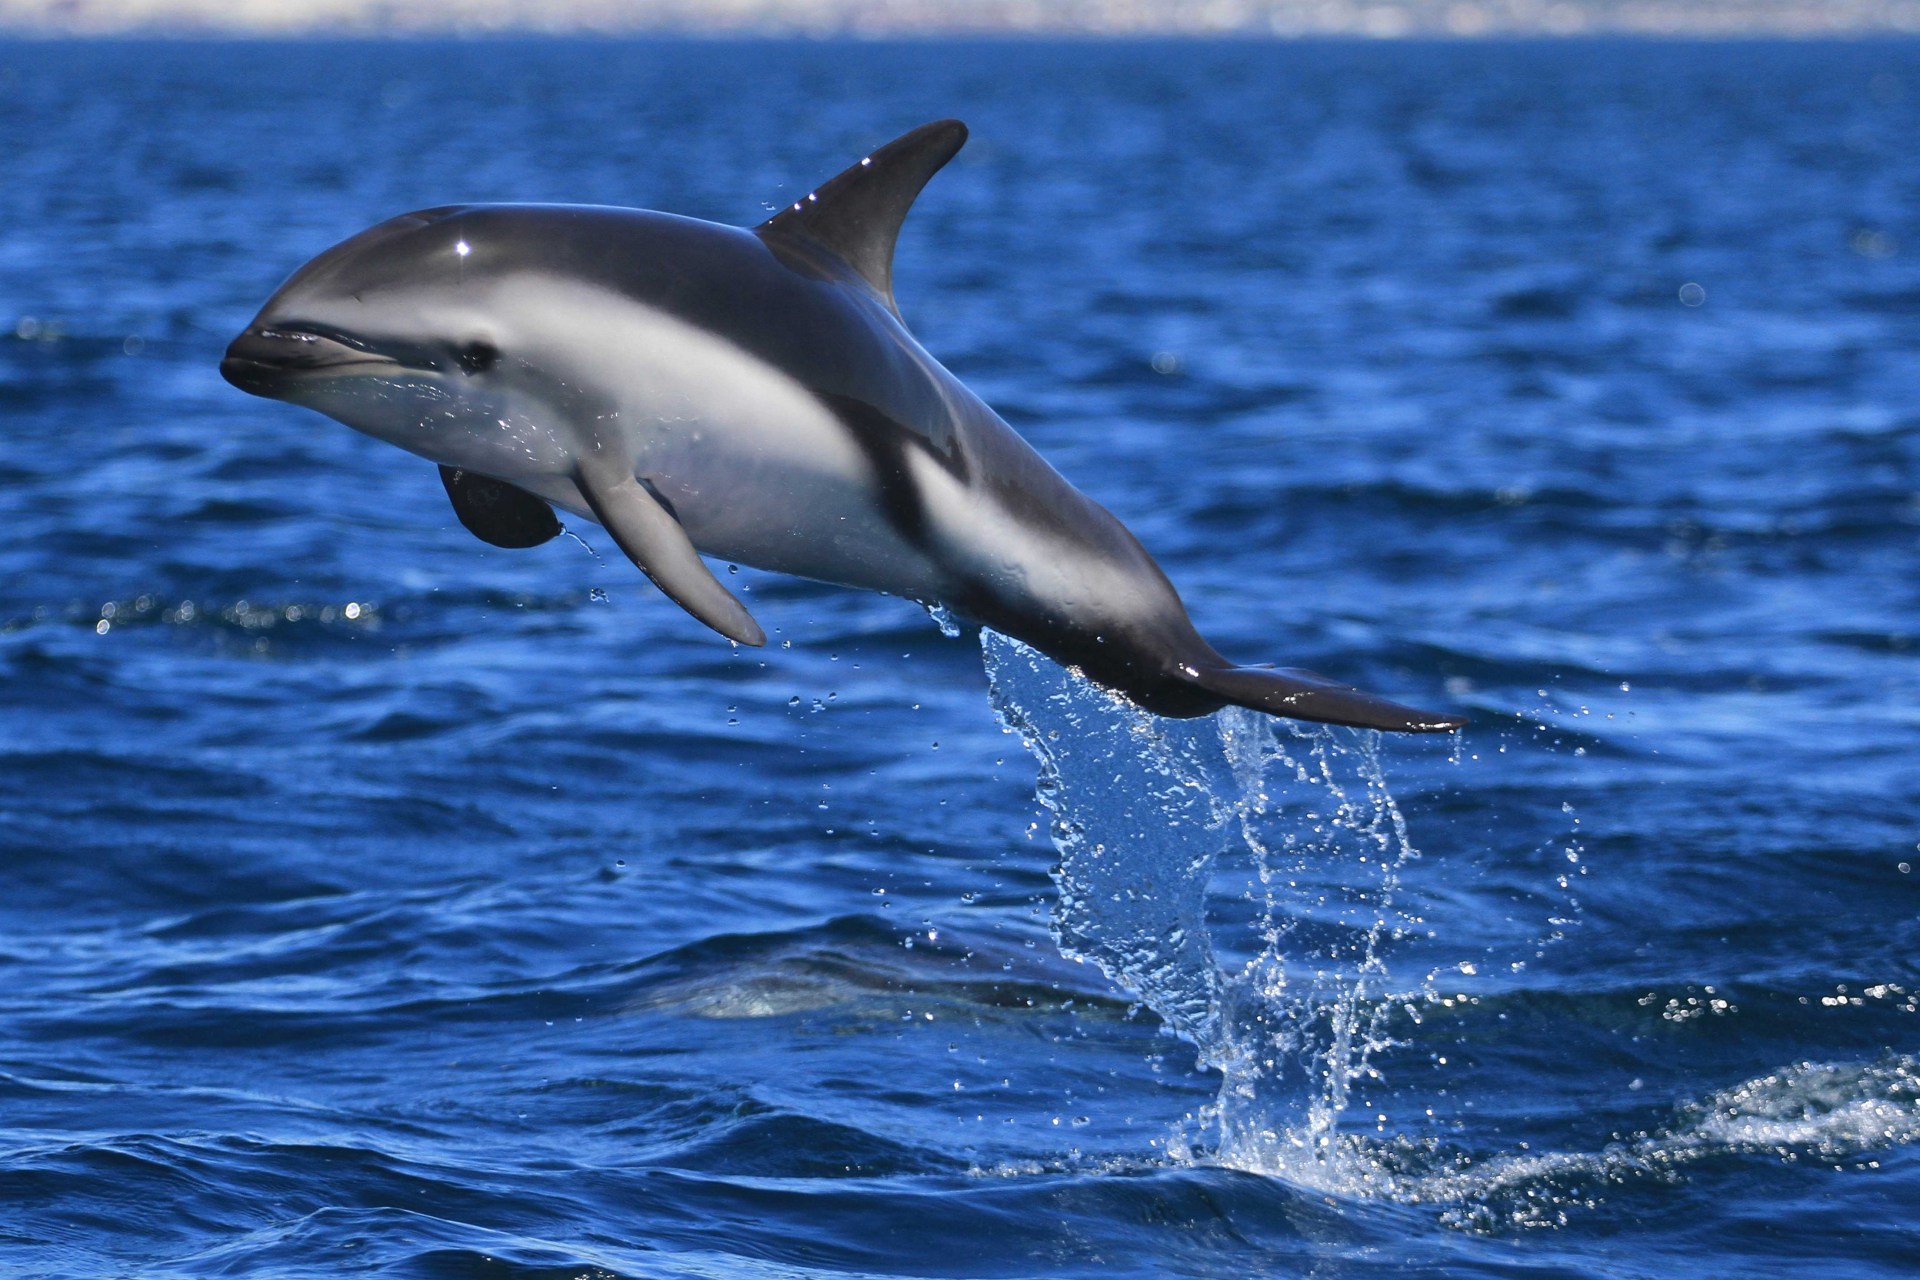 暗色斑纹海豚是一种中等体型的海豚,它的身上有黑色的条纹和斑点,尾巴